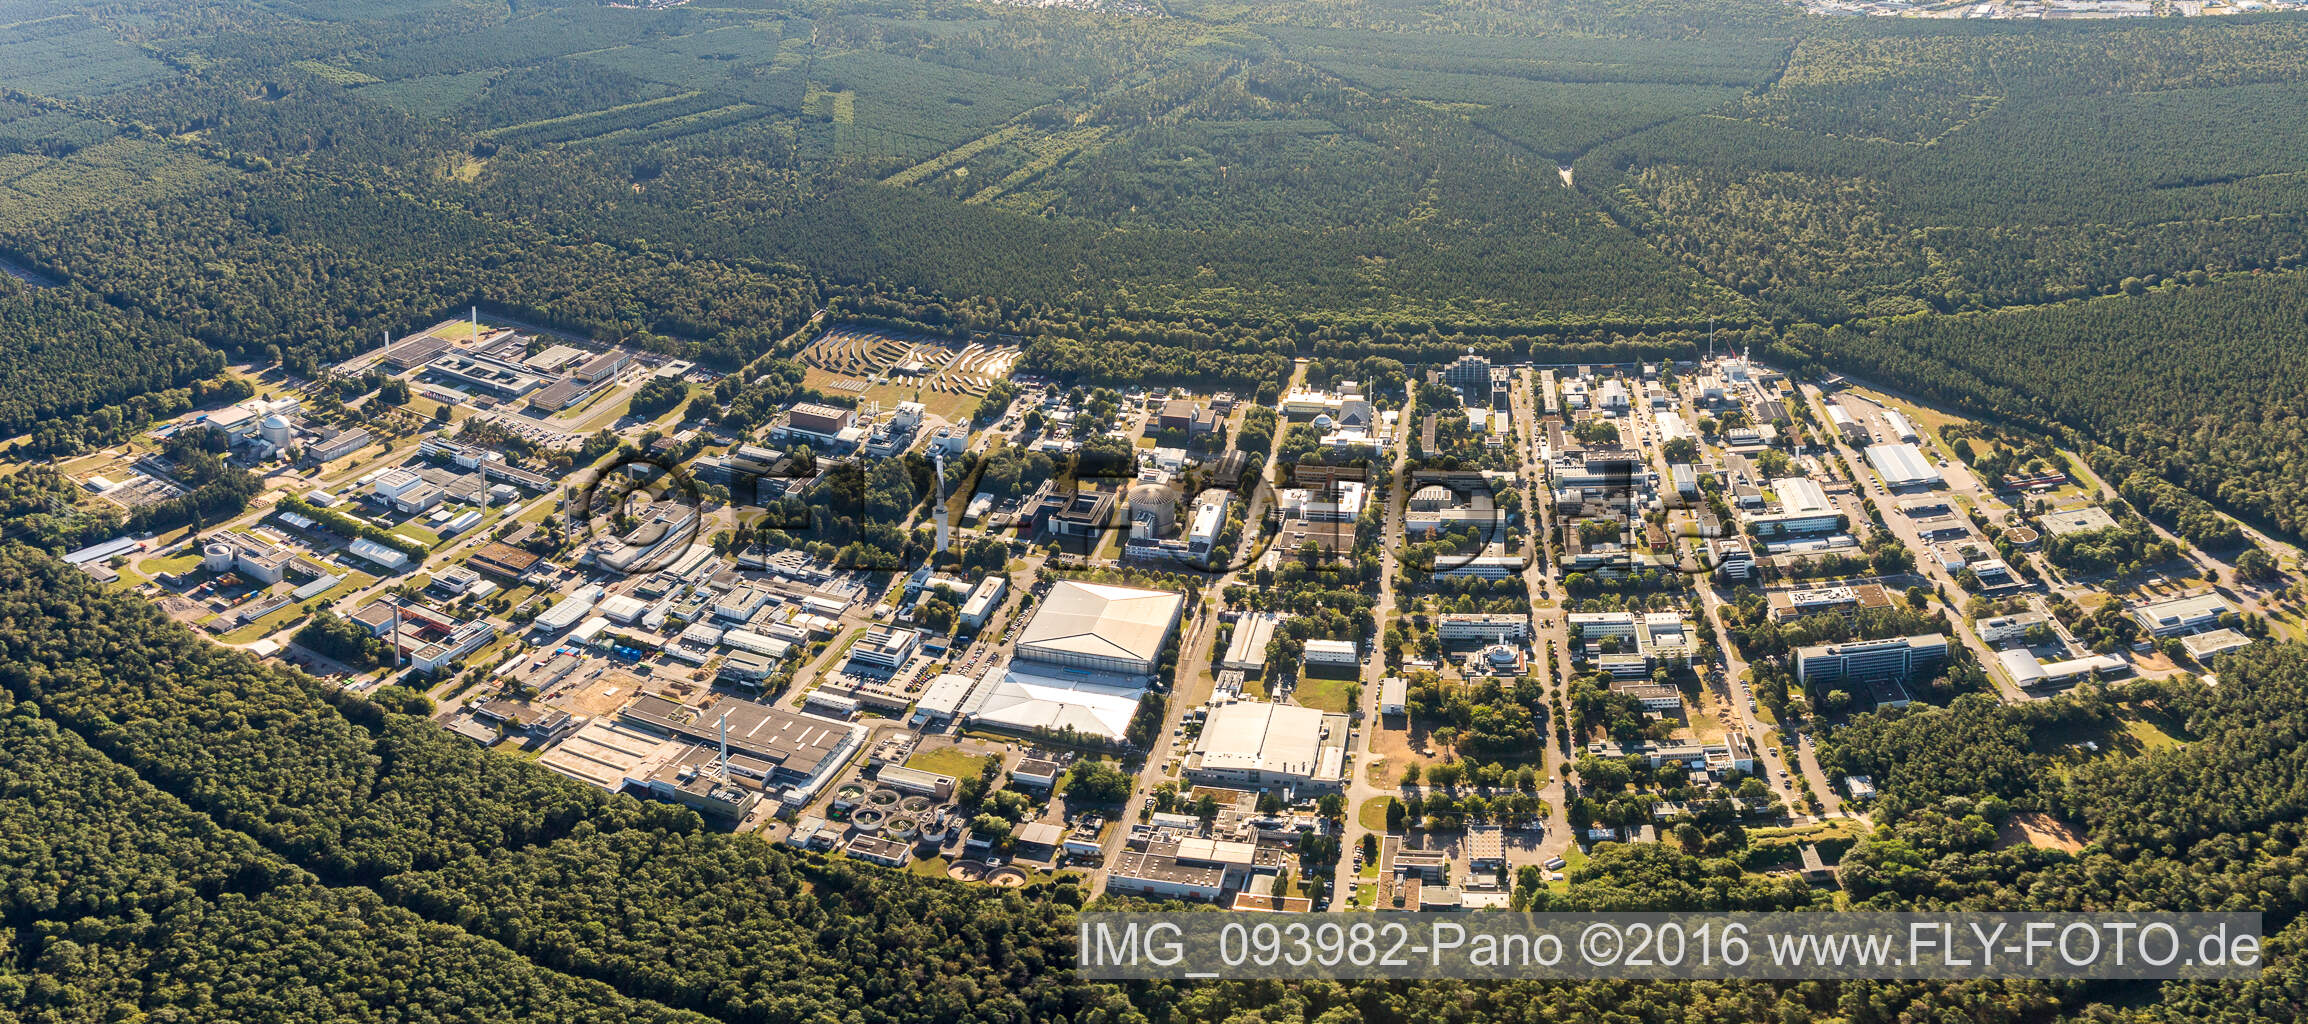 Vue aérienne de Perspective panoramique Campus University KIT - Campus Nord (ancien centre de recherche nucléaire de Karlsruhe) dans le Haardtwald à le quartier Leopoldshafen in Eggenstein-Leopoldshafen dans le département Bade-Wurtemberg, Allemagne